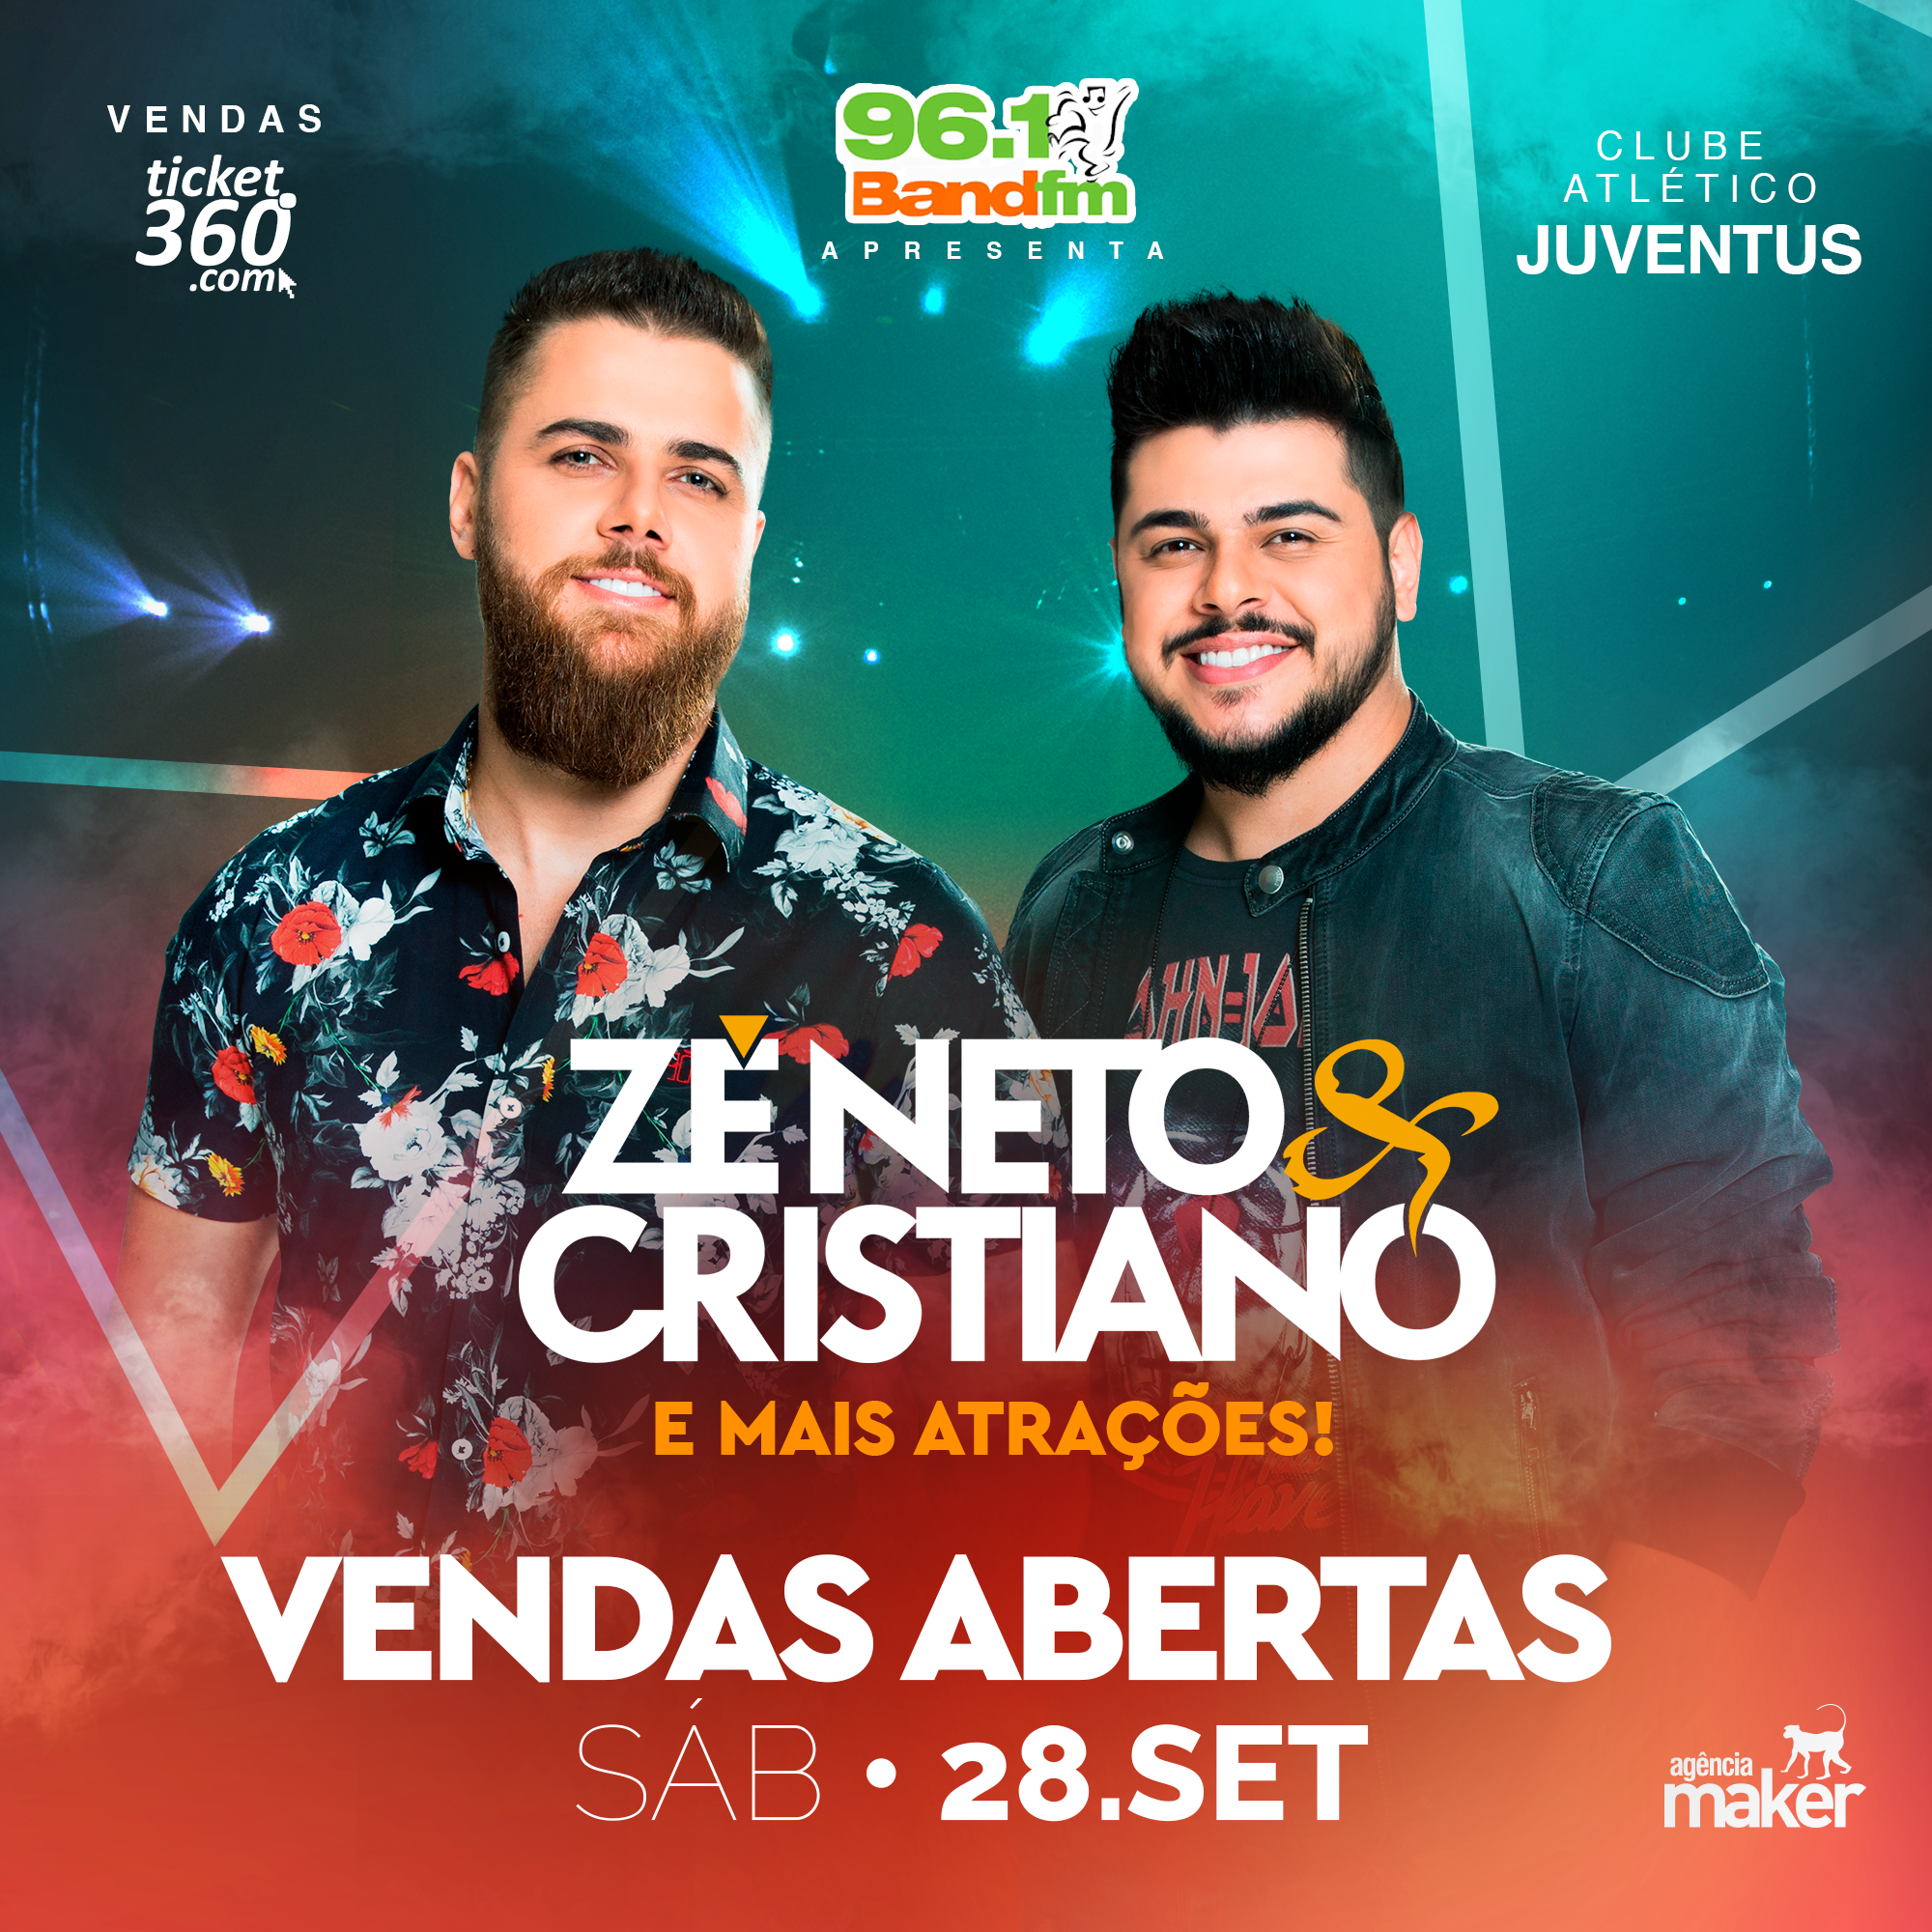 Show ZÉ NETO & CRISTIANO - Este evento não é organizado pelo Clube Atlético Juventus